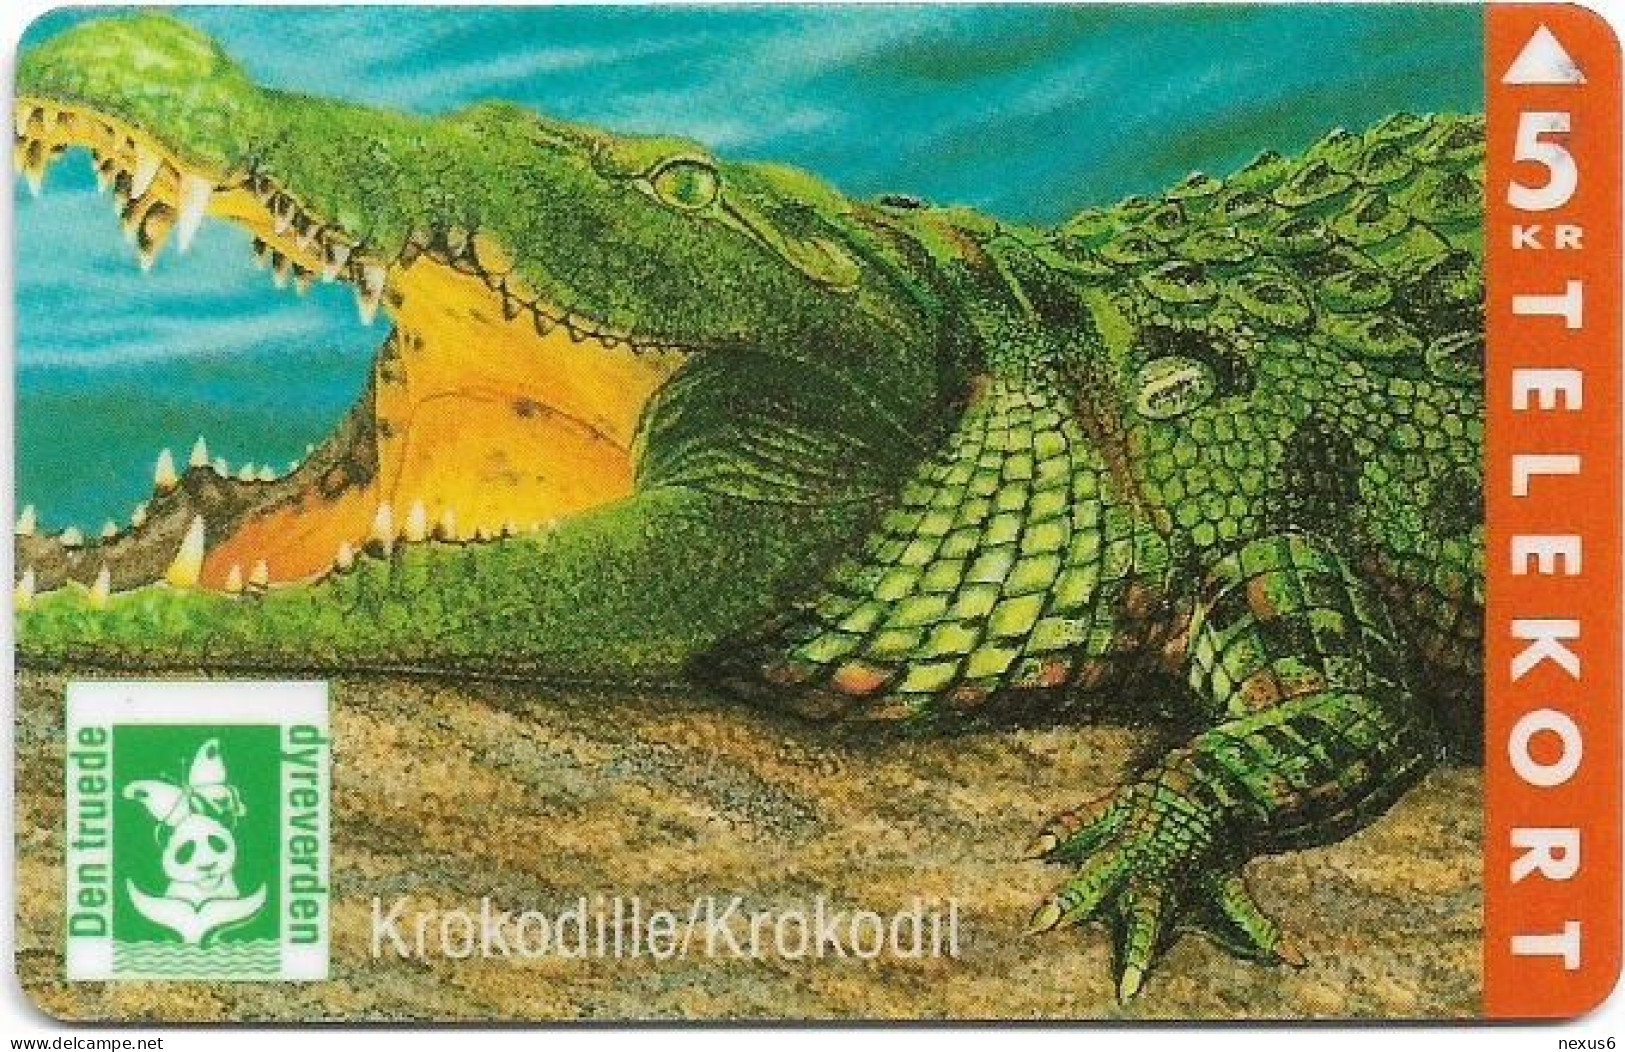 Denmark - KTAS - Crocodile, Krokodille - TDKP110 - 10.1994, 5kr, 2.000ex, Used - Denemarken